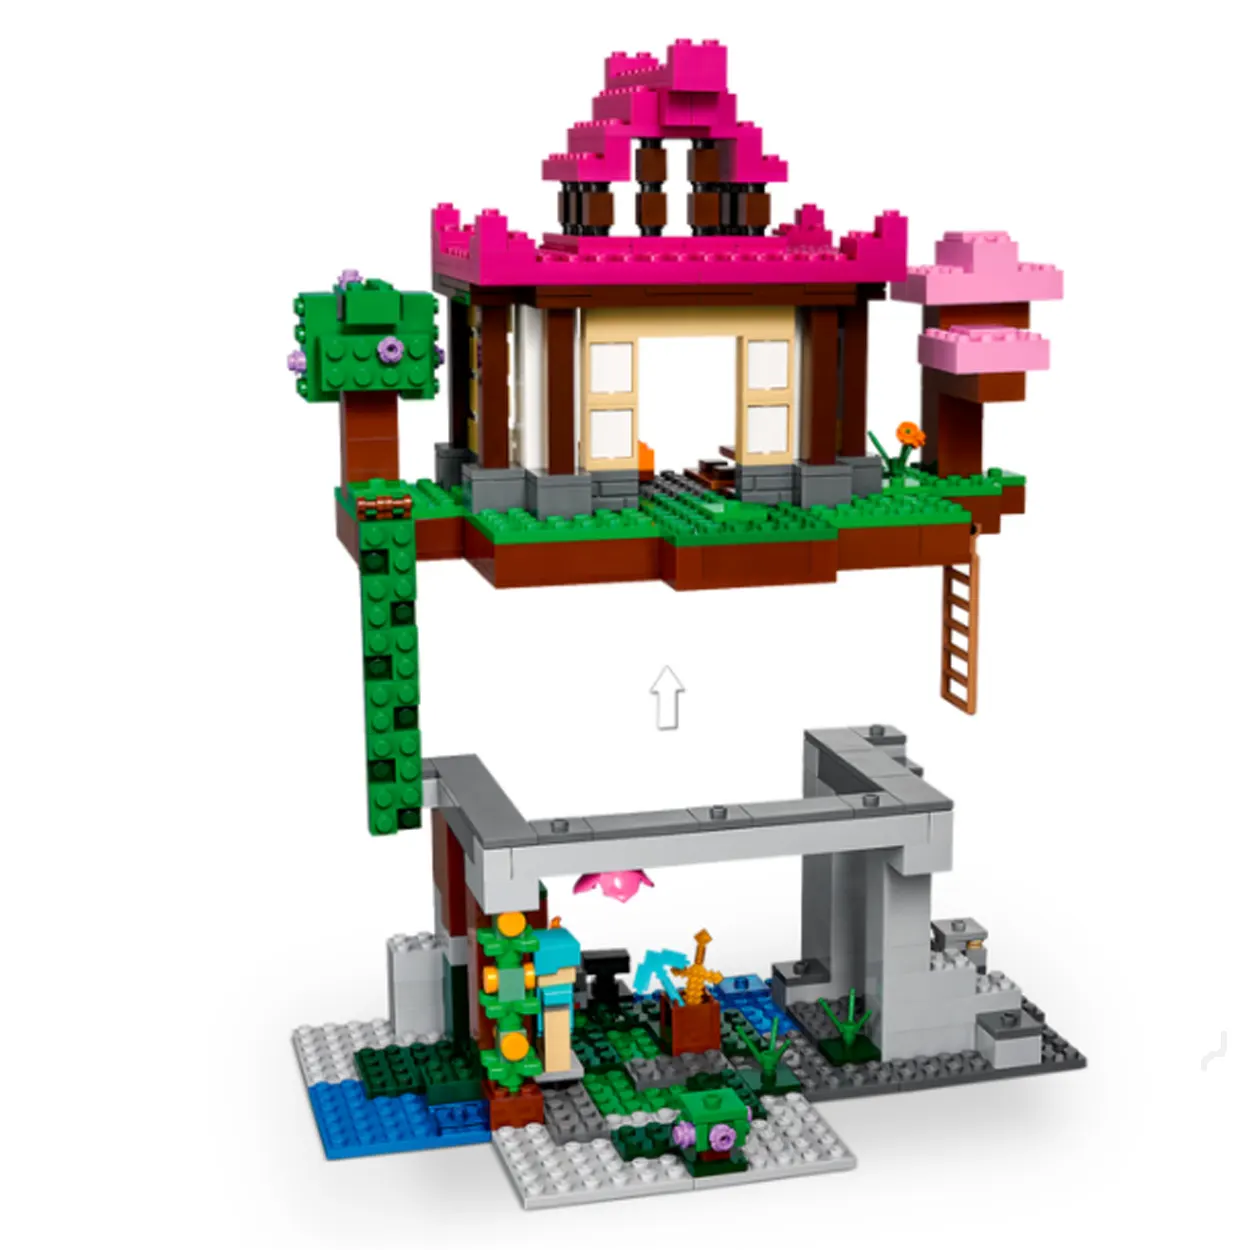 1月1日発売レゴ マインクラフト新製品情報 動物ときのこなど 22 スタッズ レゴ Lego 総合ニュースメディア